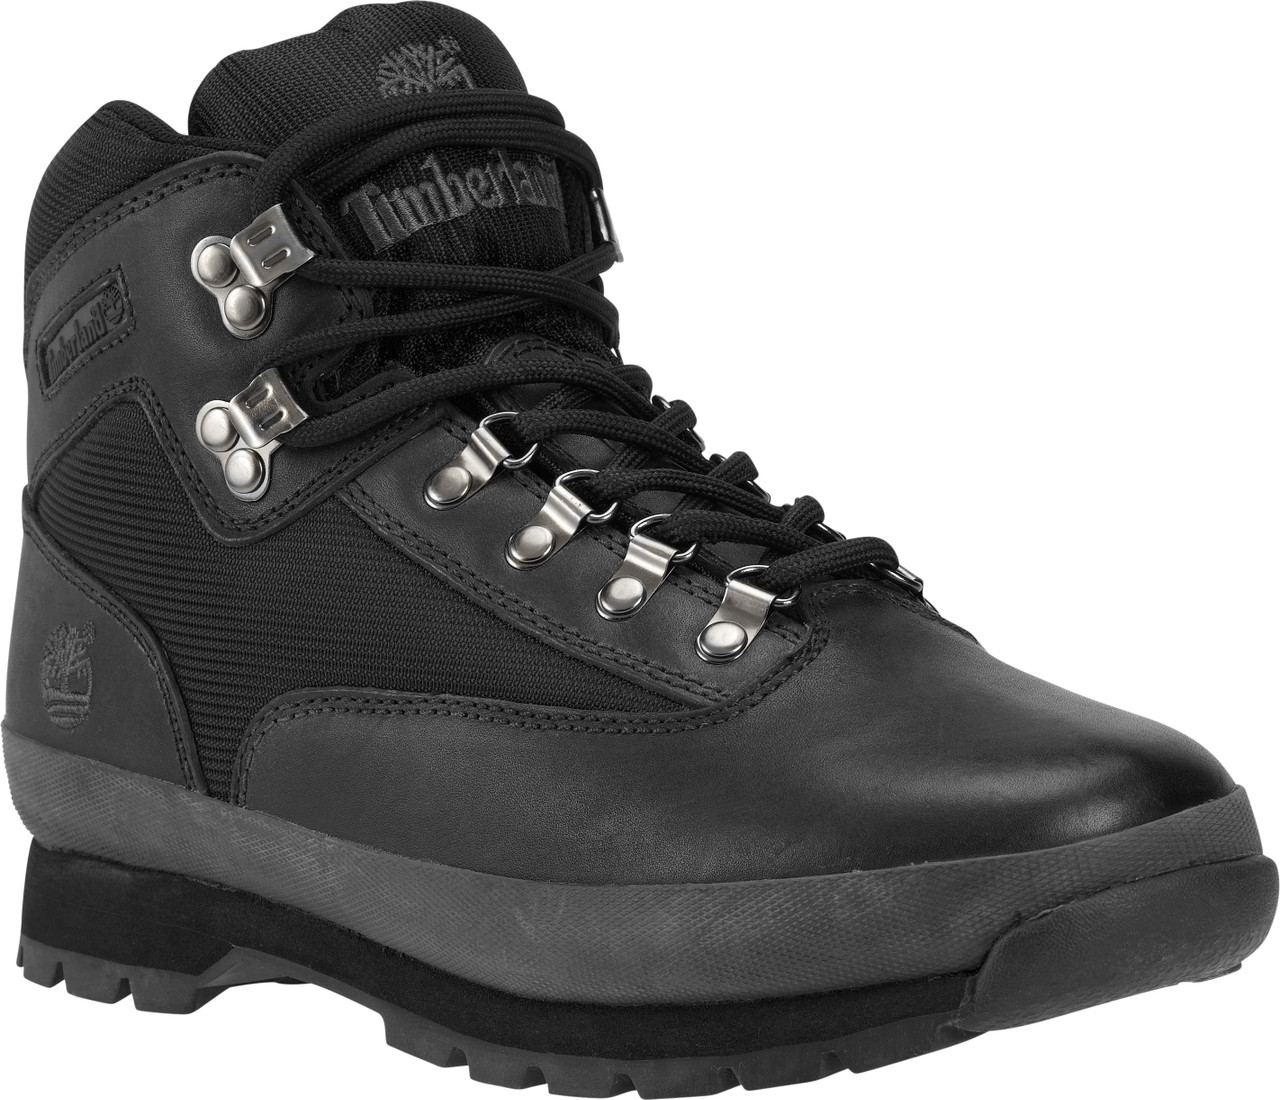 men's euro hiker timberland boots